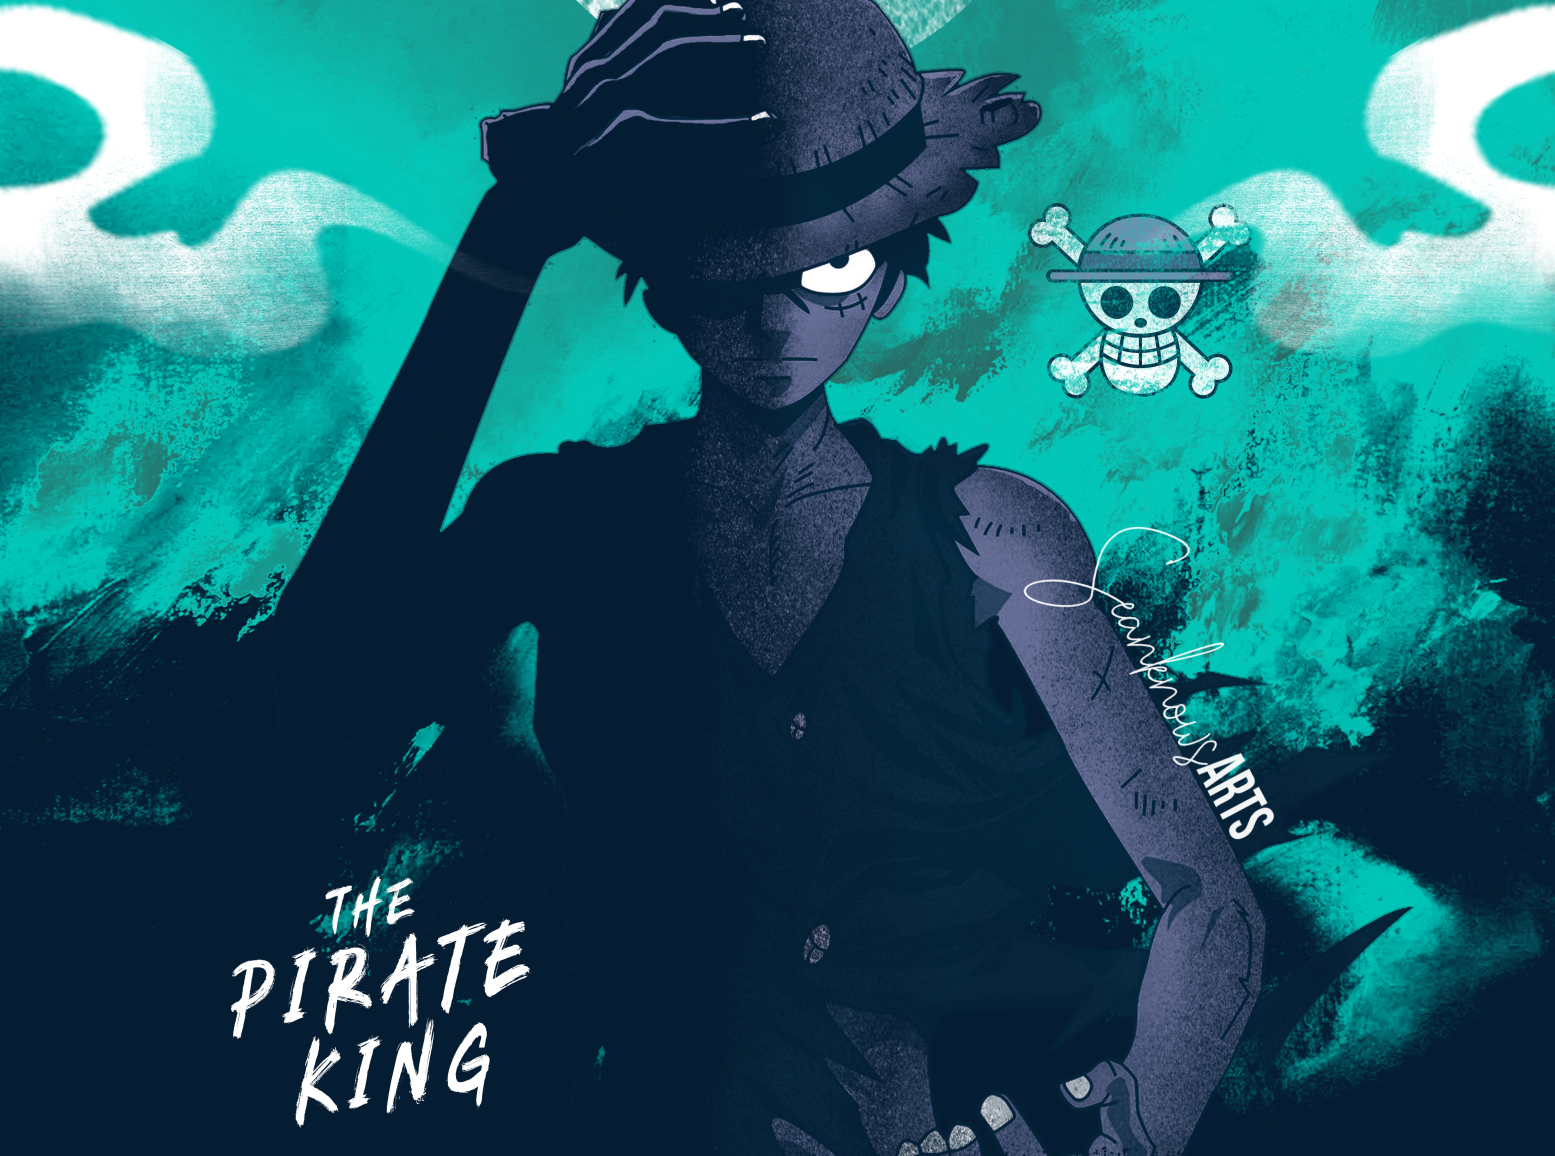 The Pirate King One Piece: Với bức ảnh này, bạn sẽ được chiêm ngưỡng người đàn ông mạnh mẽ nhất trong thế giới One Piece - Vua Hải Tặc. Với khao khát trở thành Vua Hải Tặc và tìm kiếm kho tàng One Piece, anh chàng Monkey D. Luffy đã trở thành siêu sao manga được yêu mến nhất mọi thời đại. Bấm vào để xem điều kỳ diệu đó!